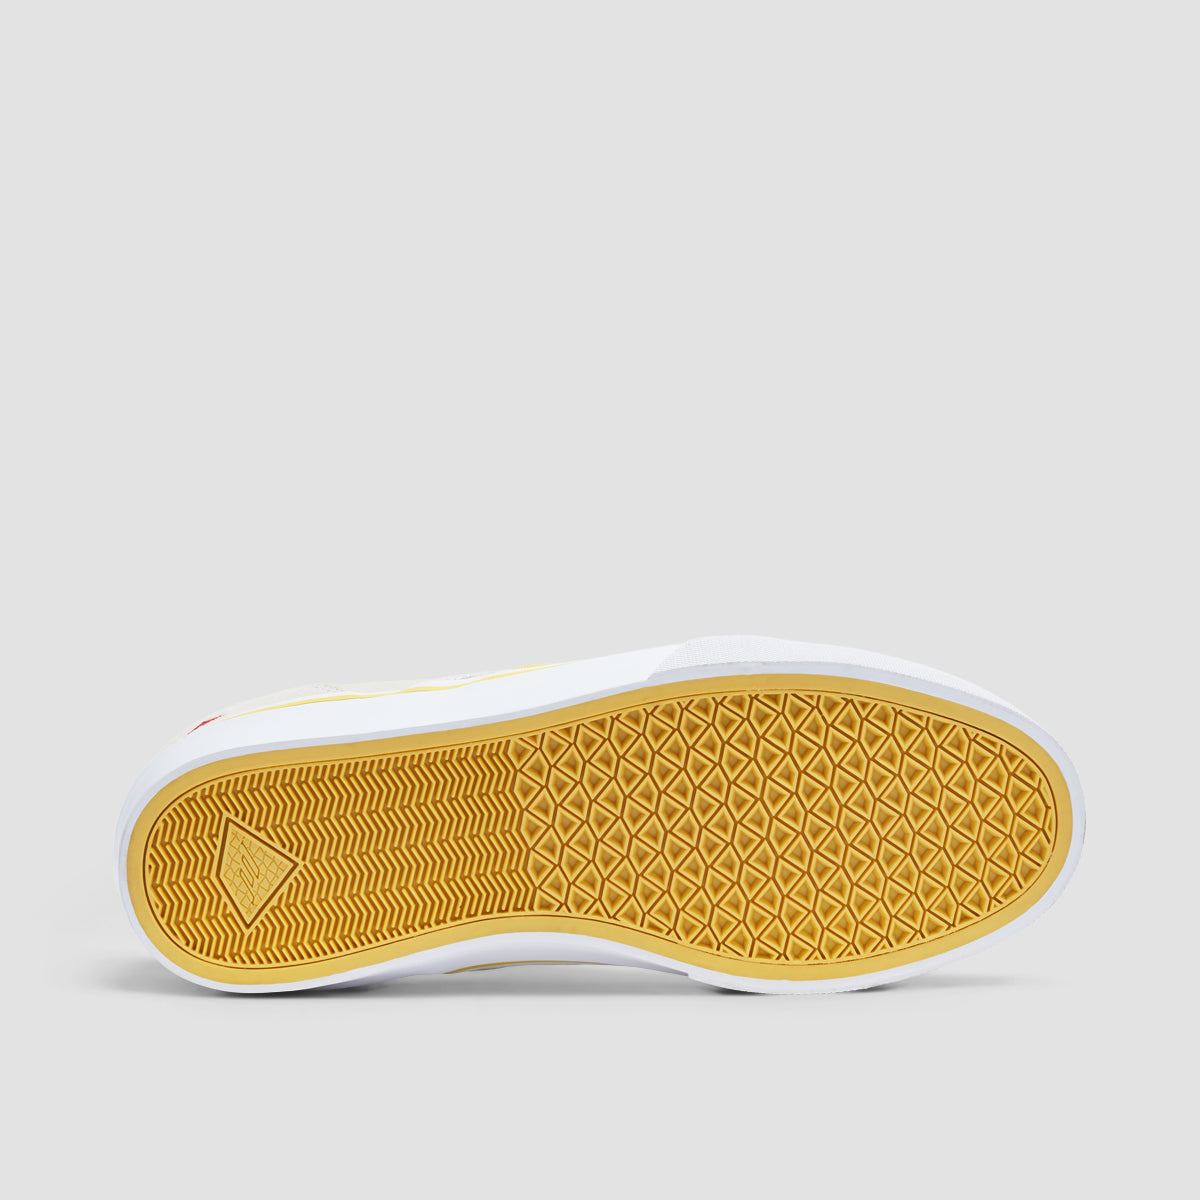 Emerica Wino G6 Slip On Shoes Grey/Yellow